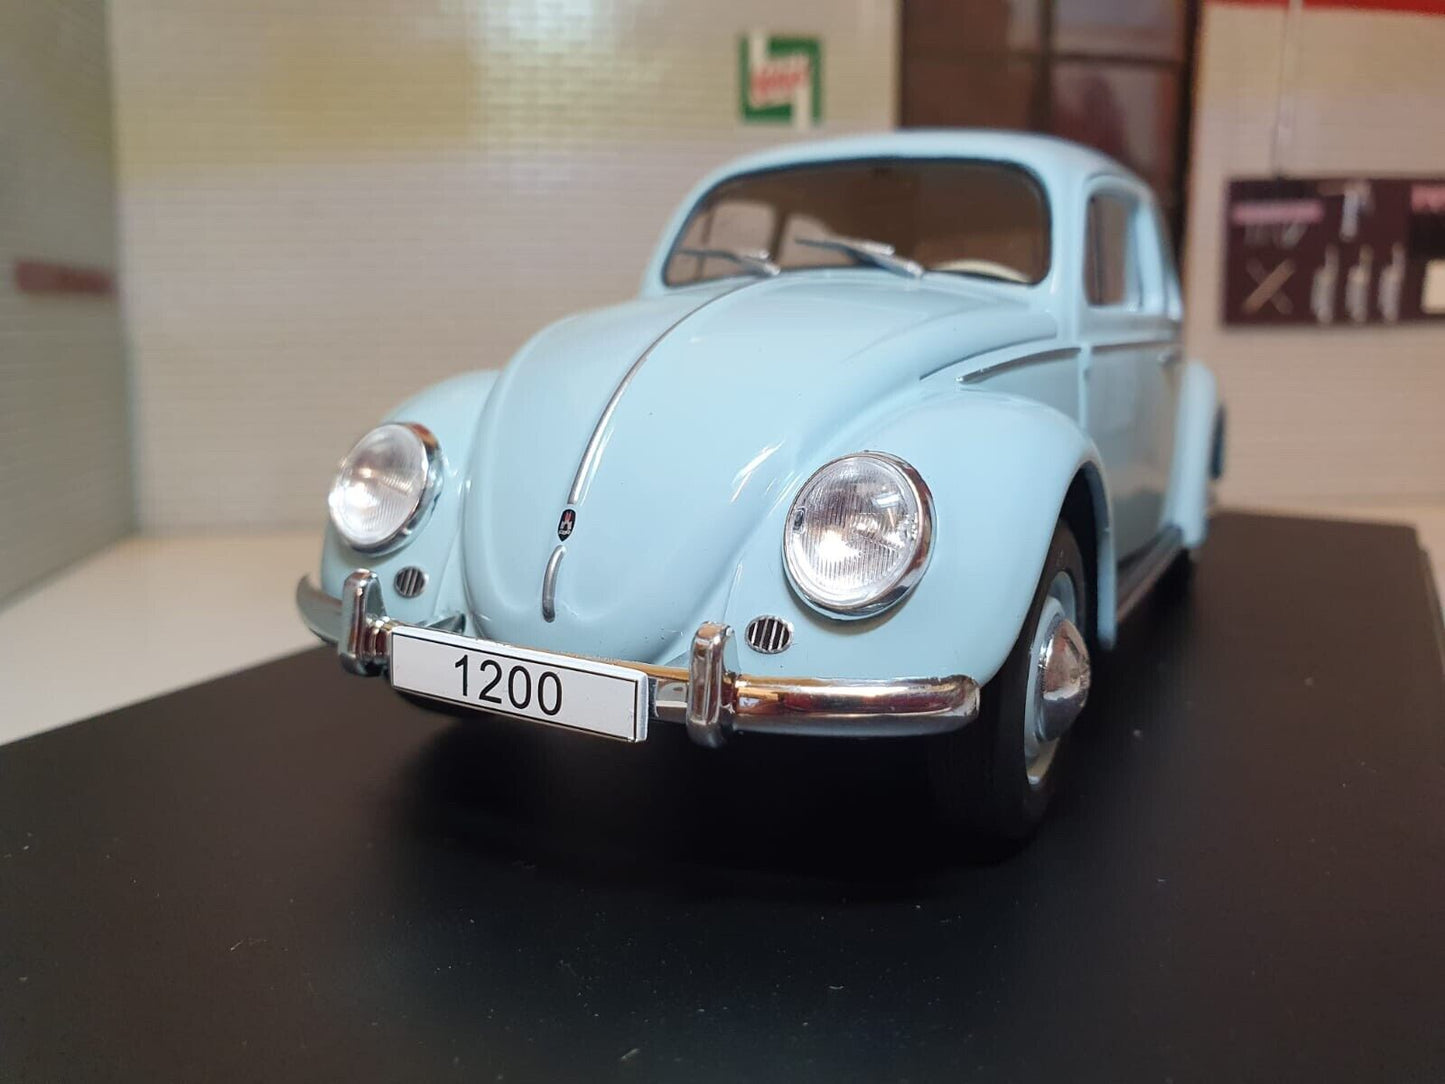 Volkswagen 1960 Coccinelle 124055 Whitebox 1:24